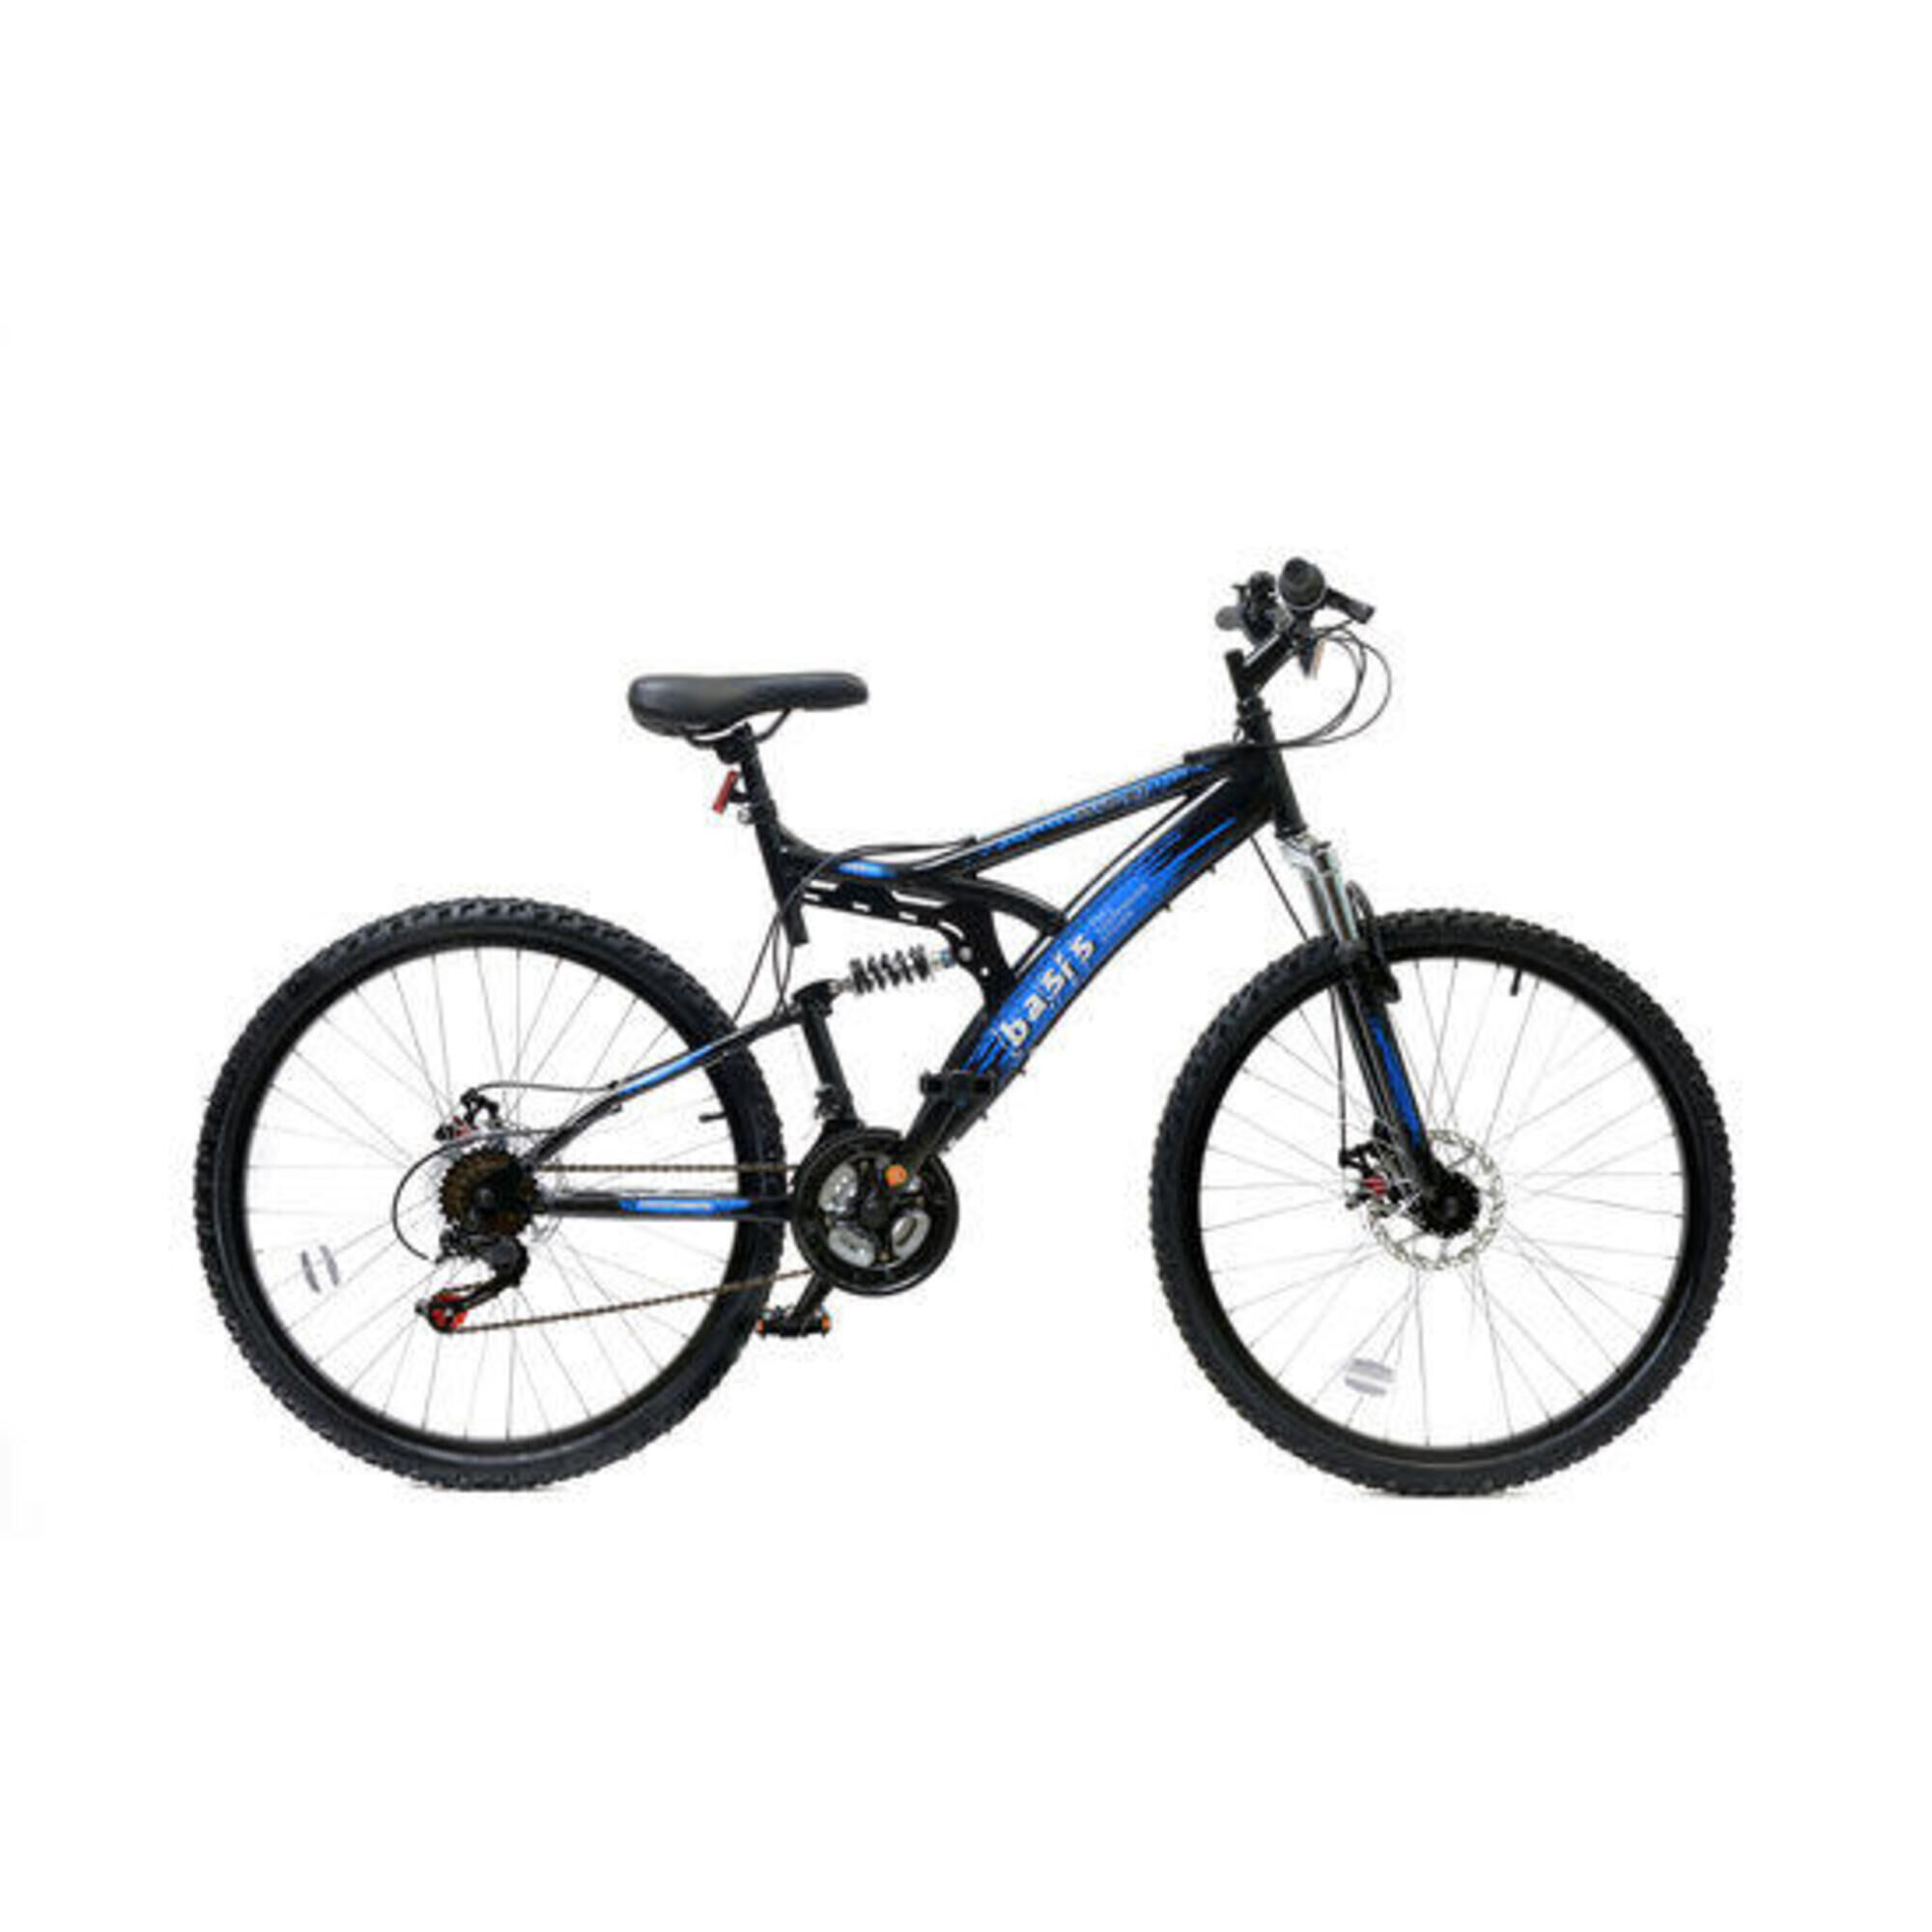 BASIS Basis 1 Full Suspension Mountain Bike - 26in Wheel - 18 Speed Black Blue